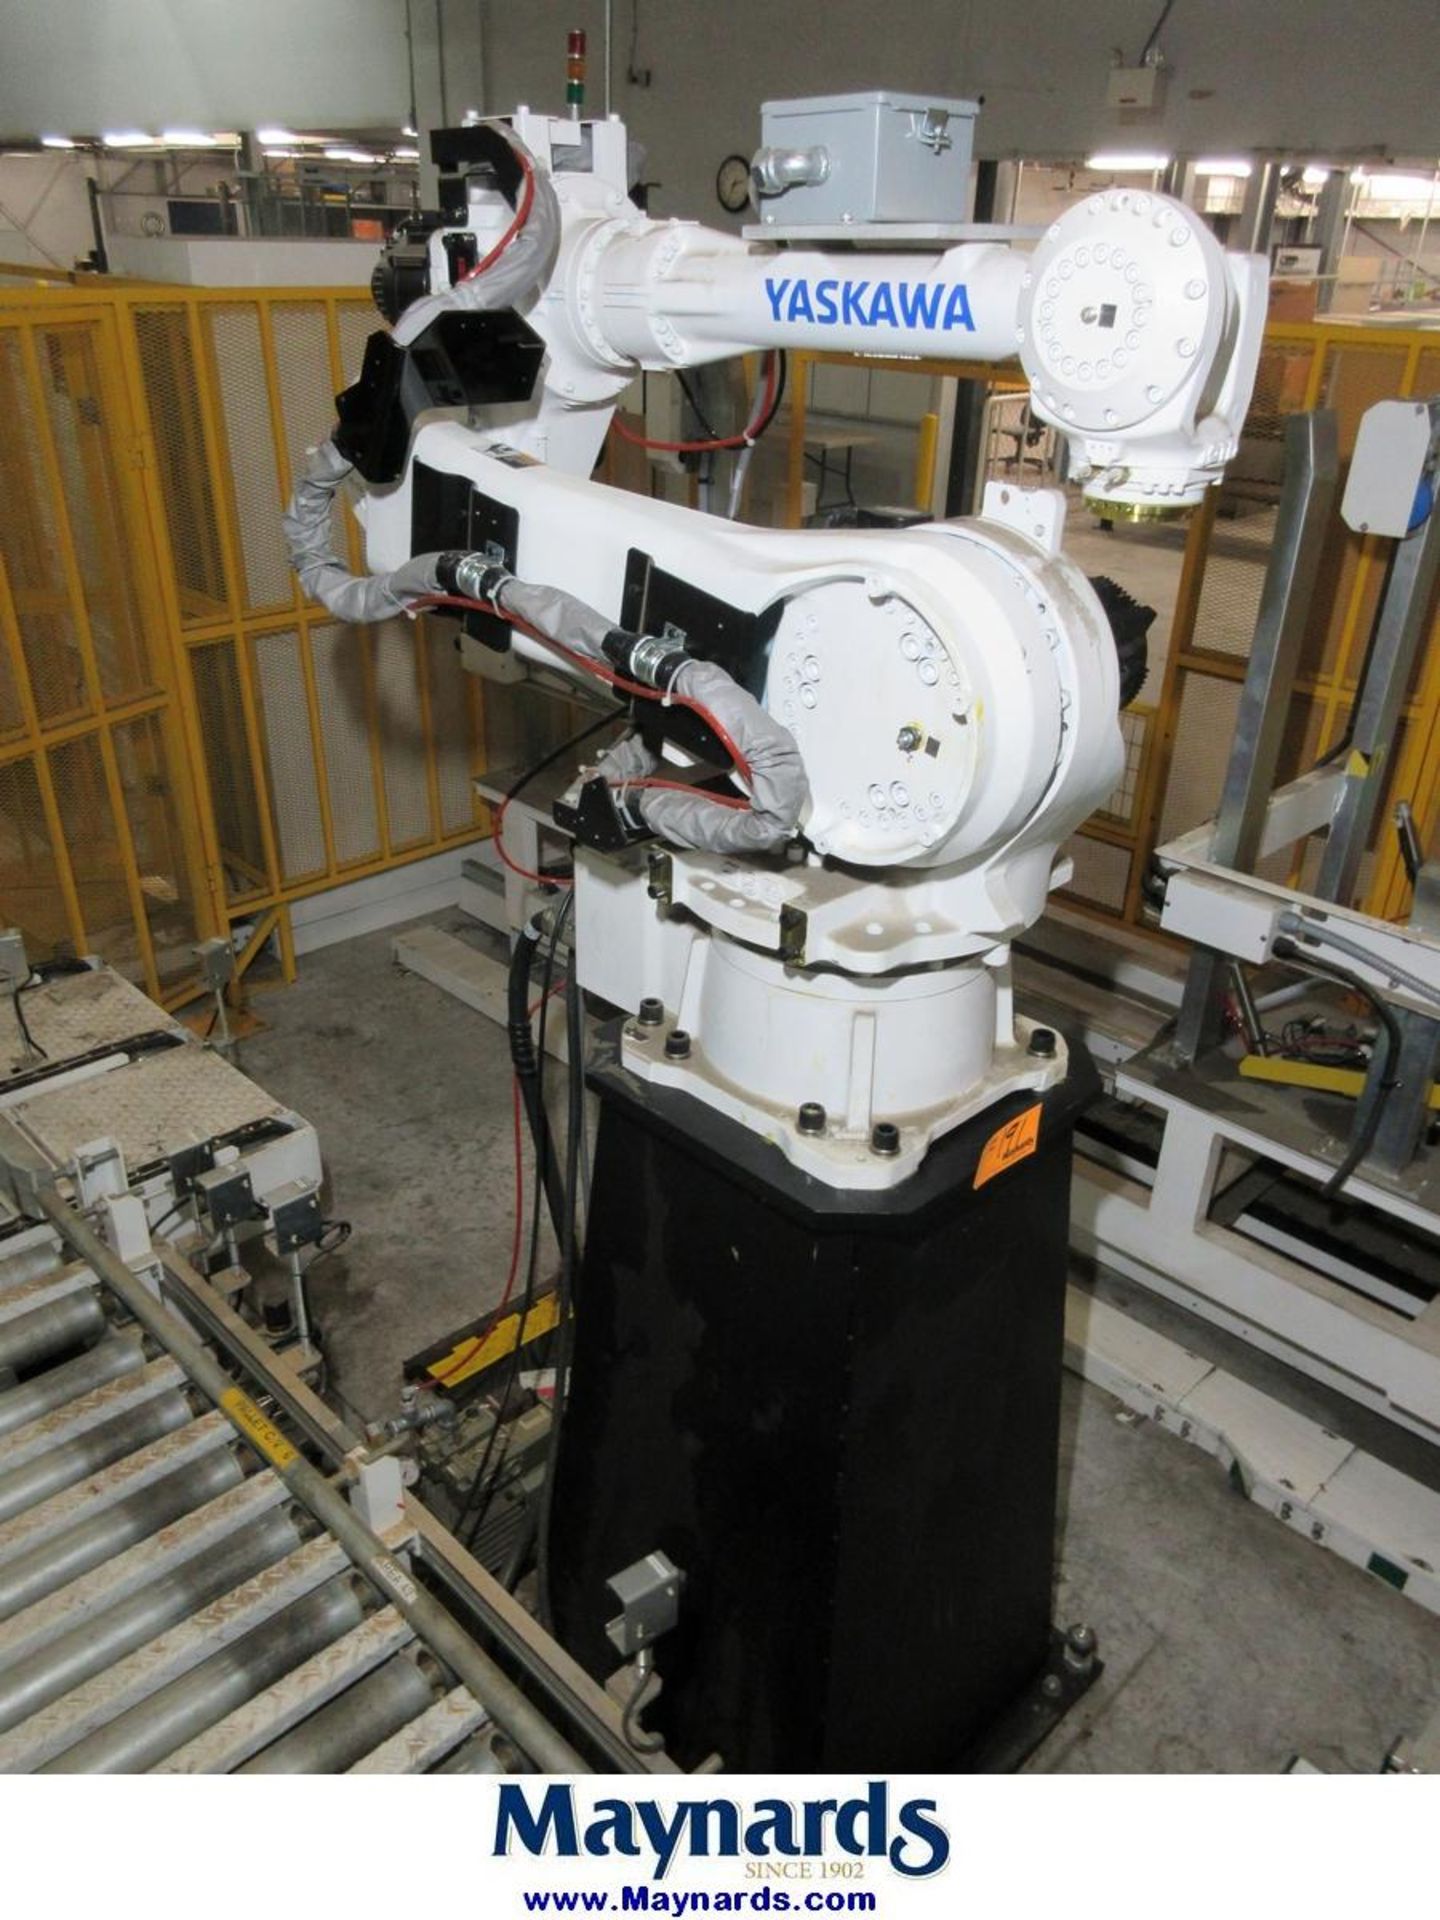 2017 Yaskawa Motoman MPL80II Type YR-MPL0080-J00 Material Handling Robot - Image 3 of 13